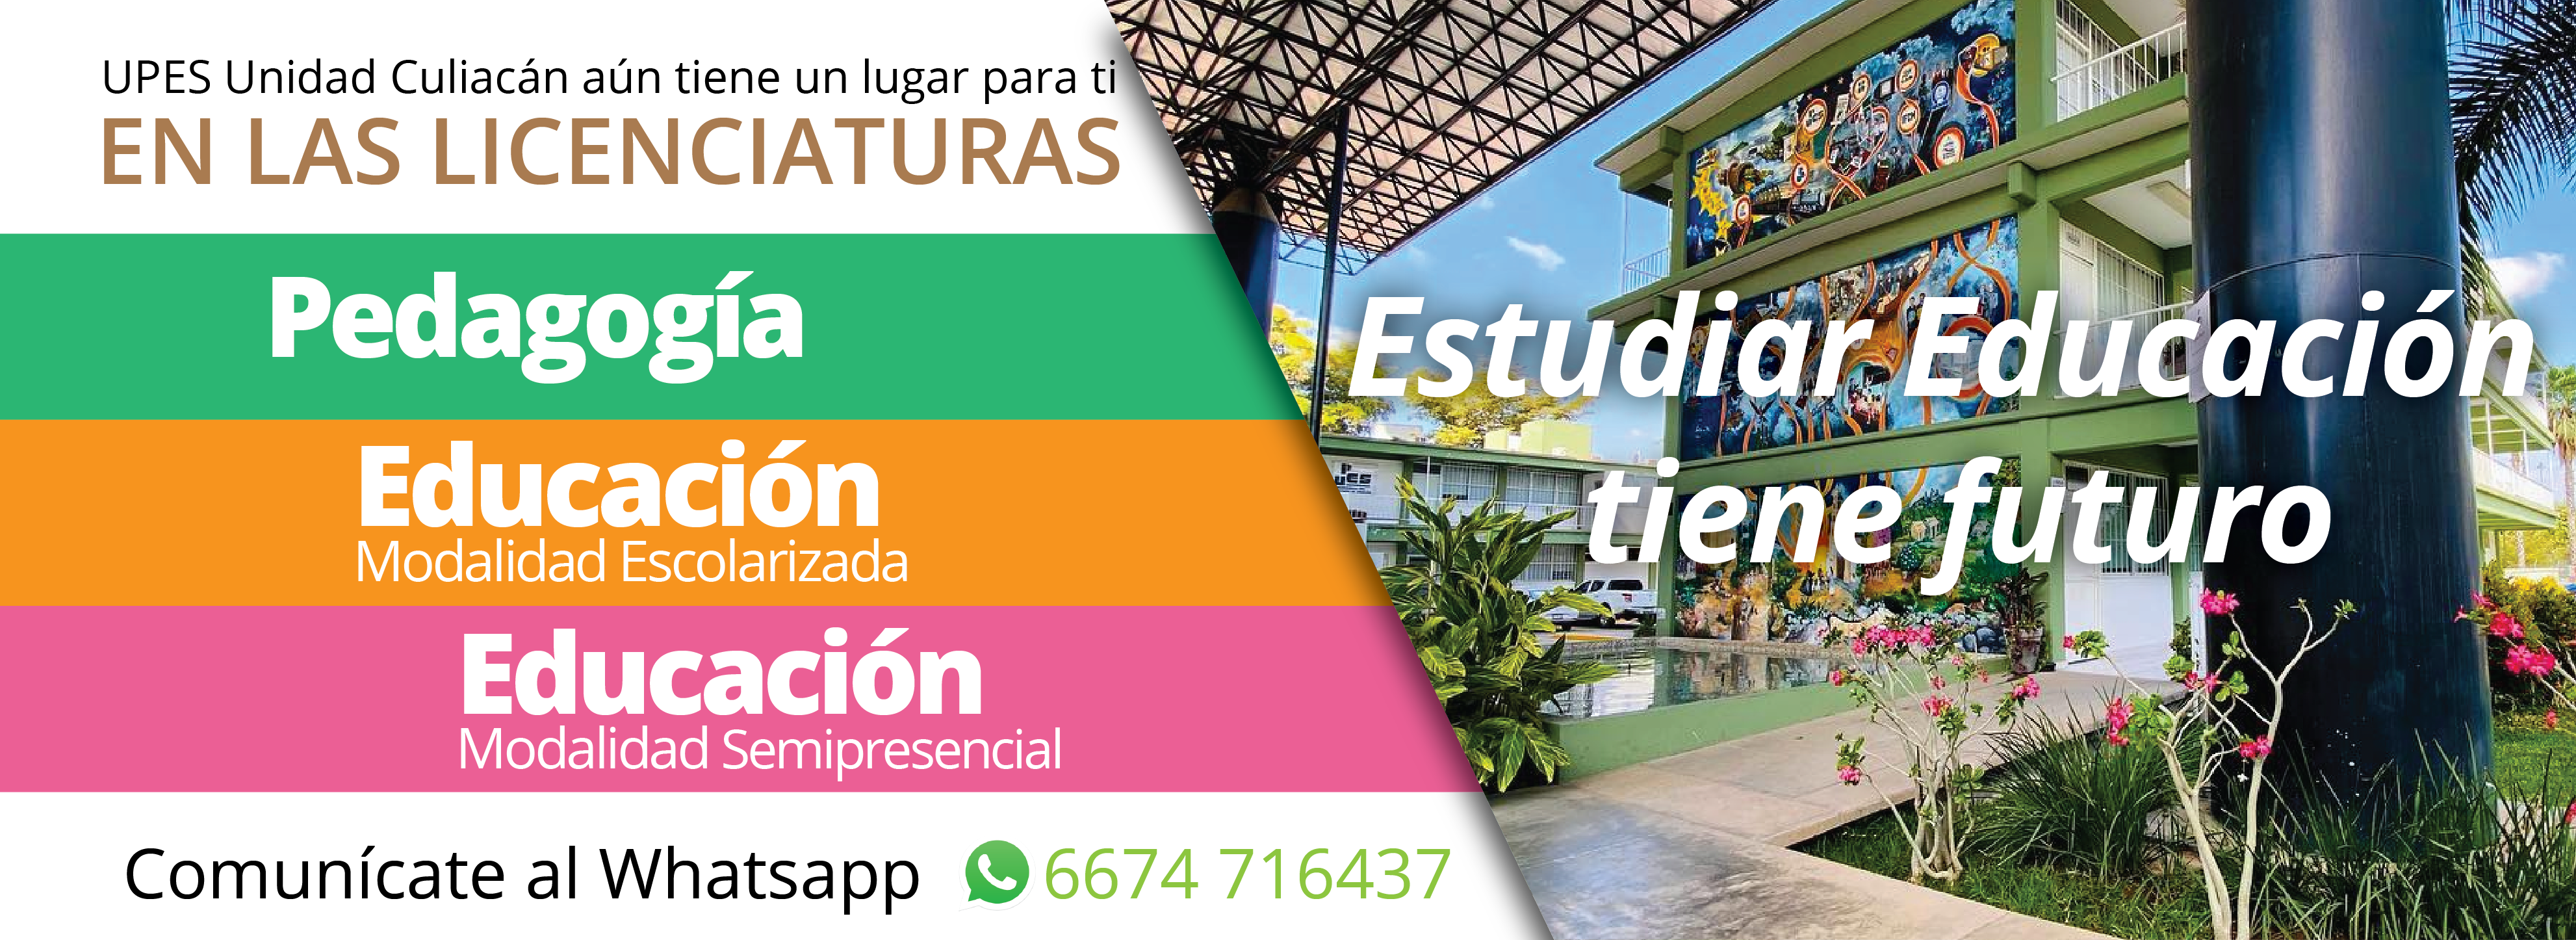 Cartel_aun_quedan_lugares_UPES_Unidad_Culiacan_Banner_web_licenciaturas_disponibles